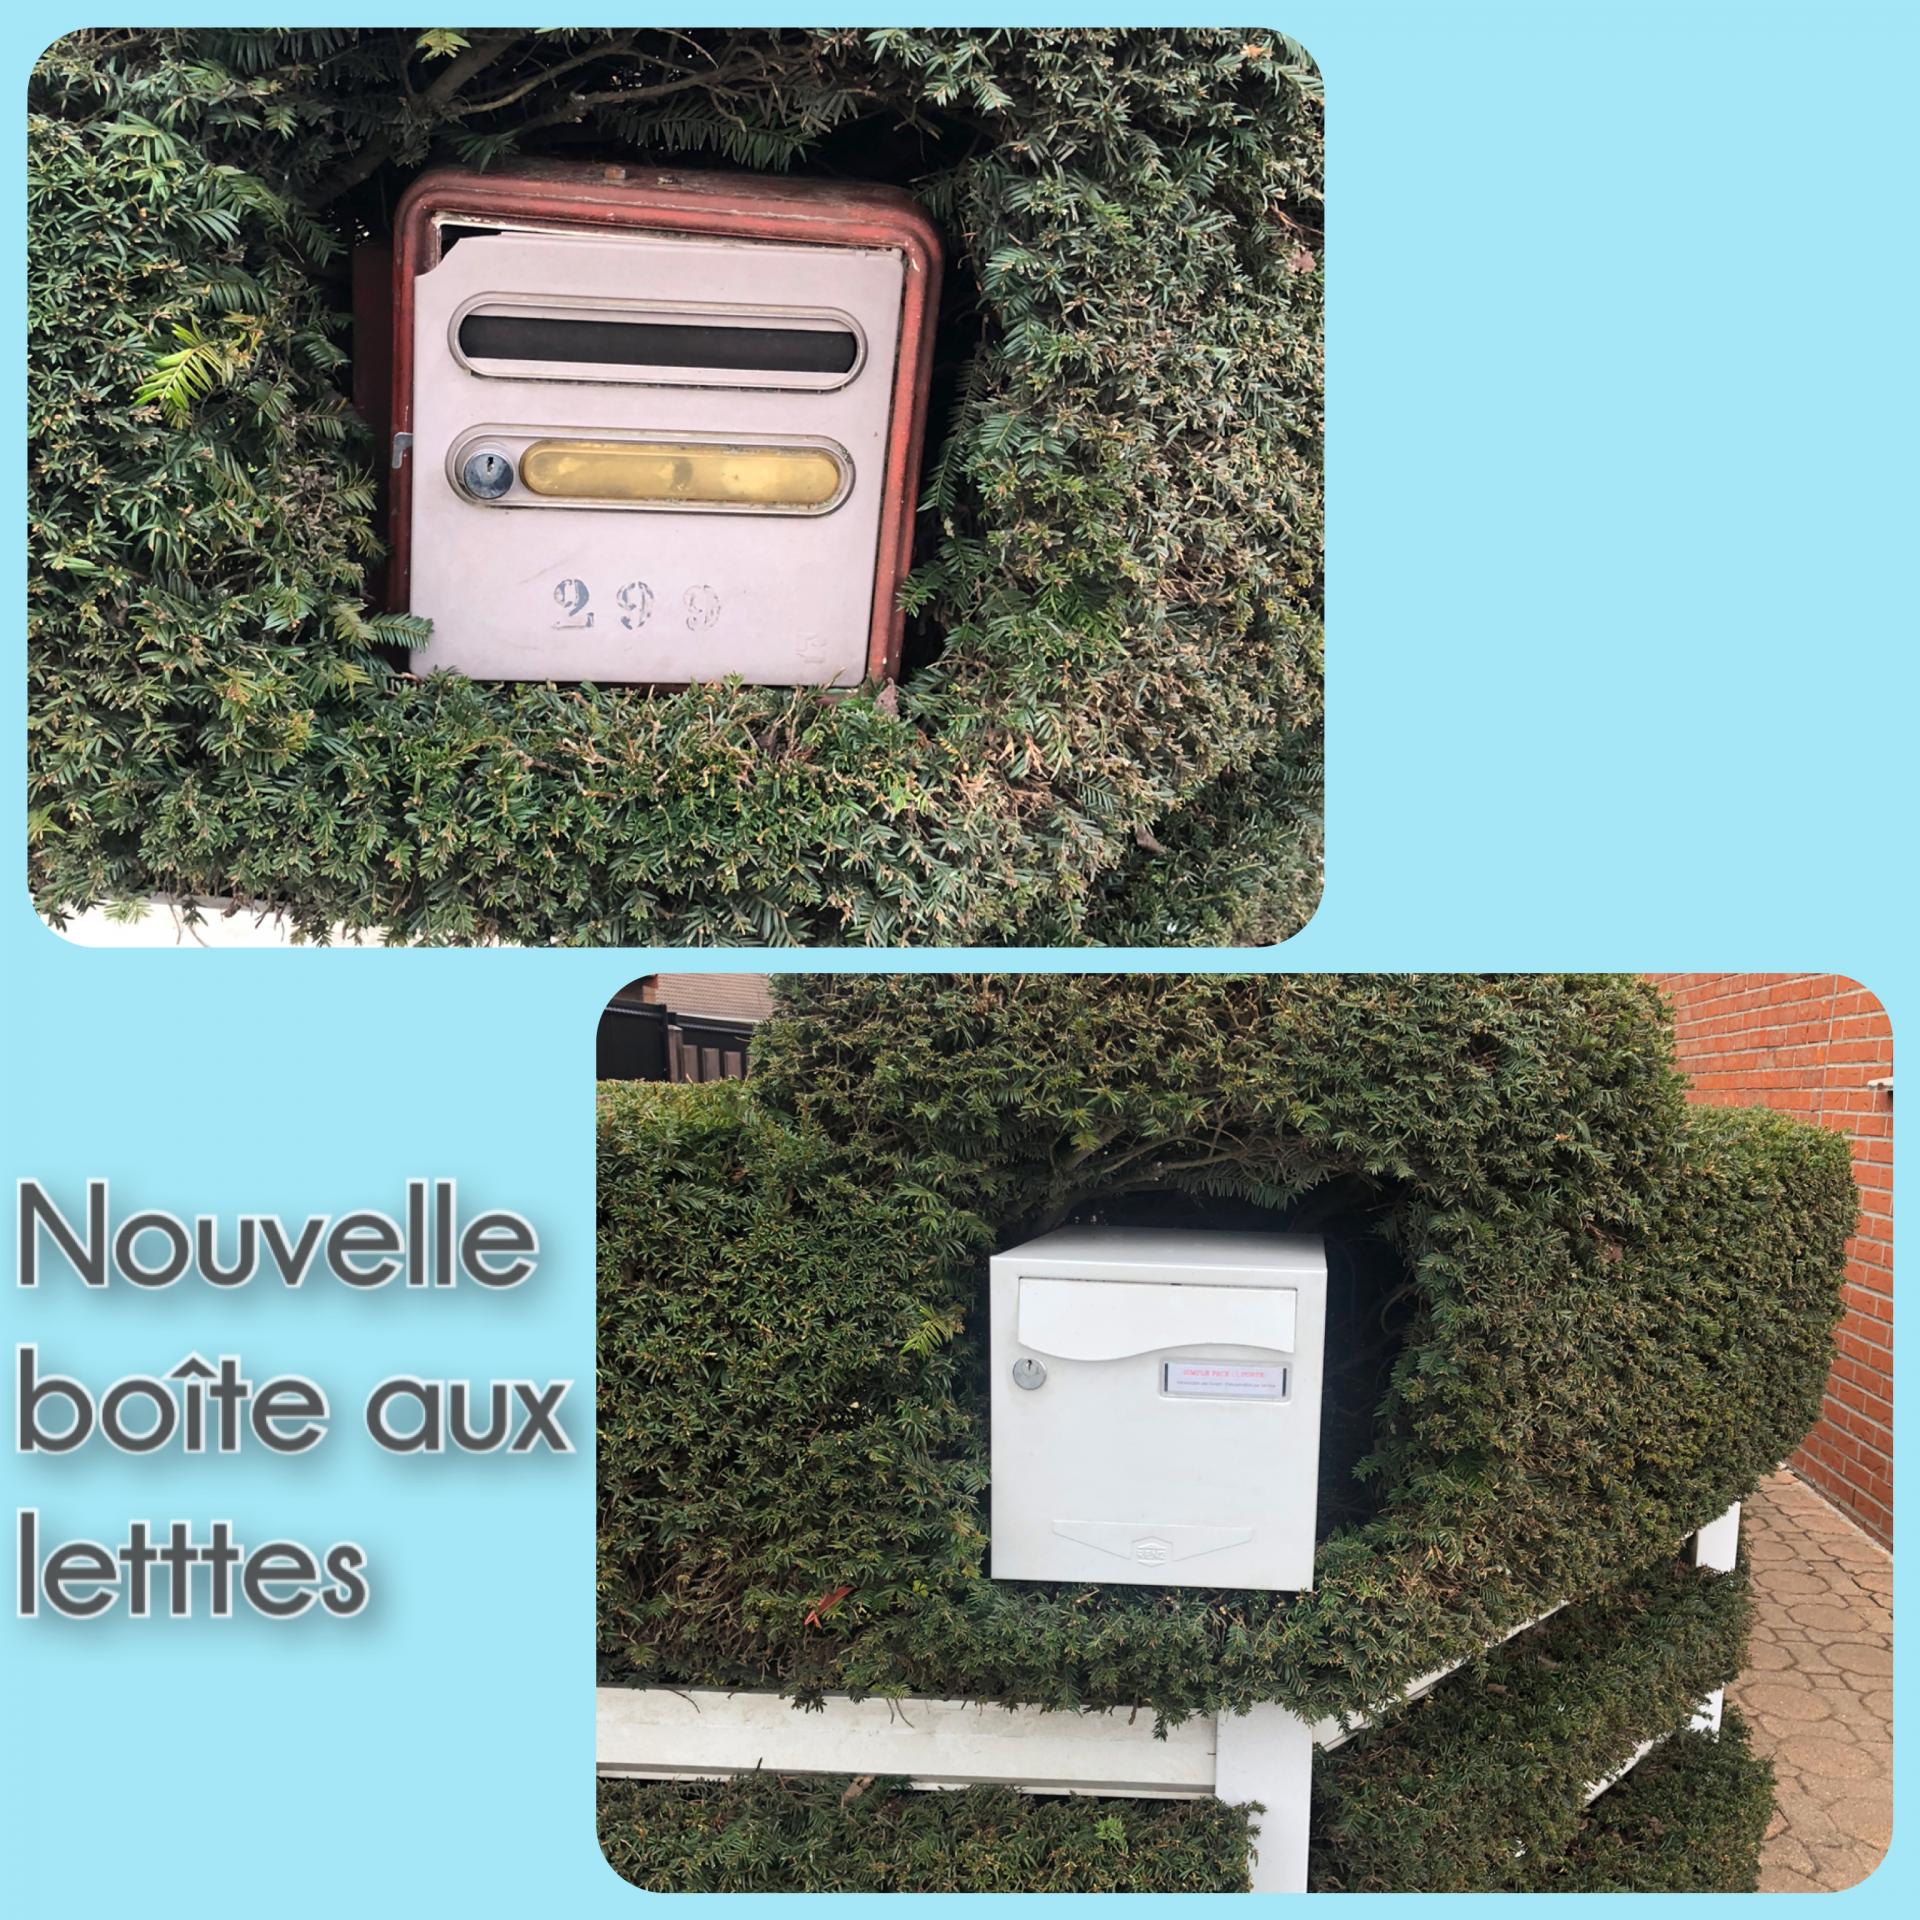 Installation d'une boite aux lettres